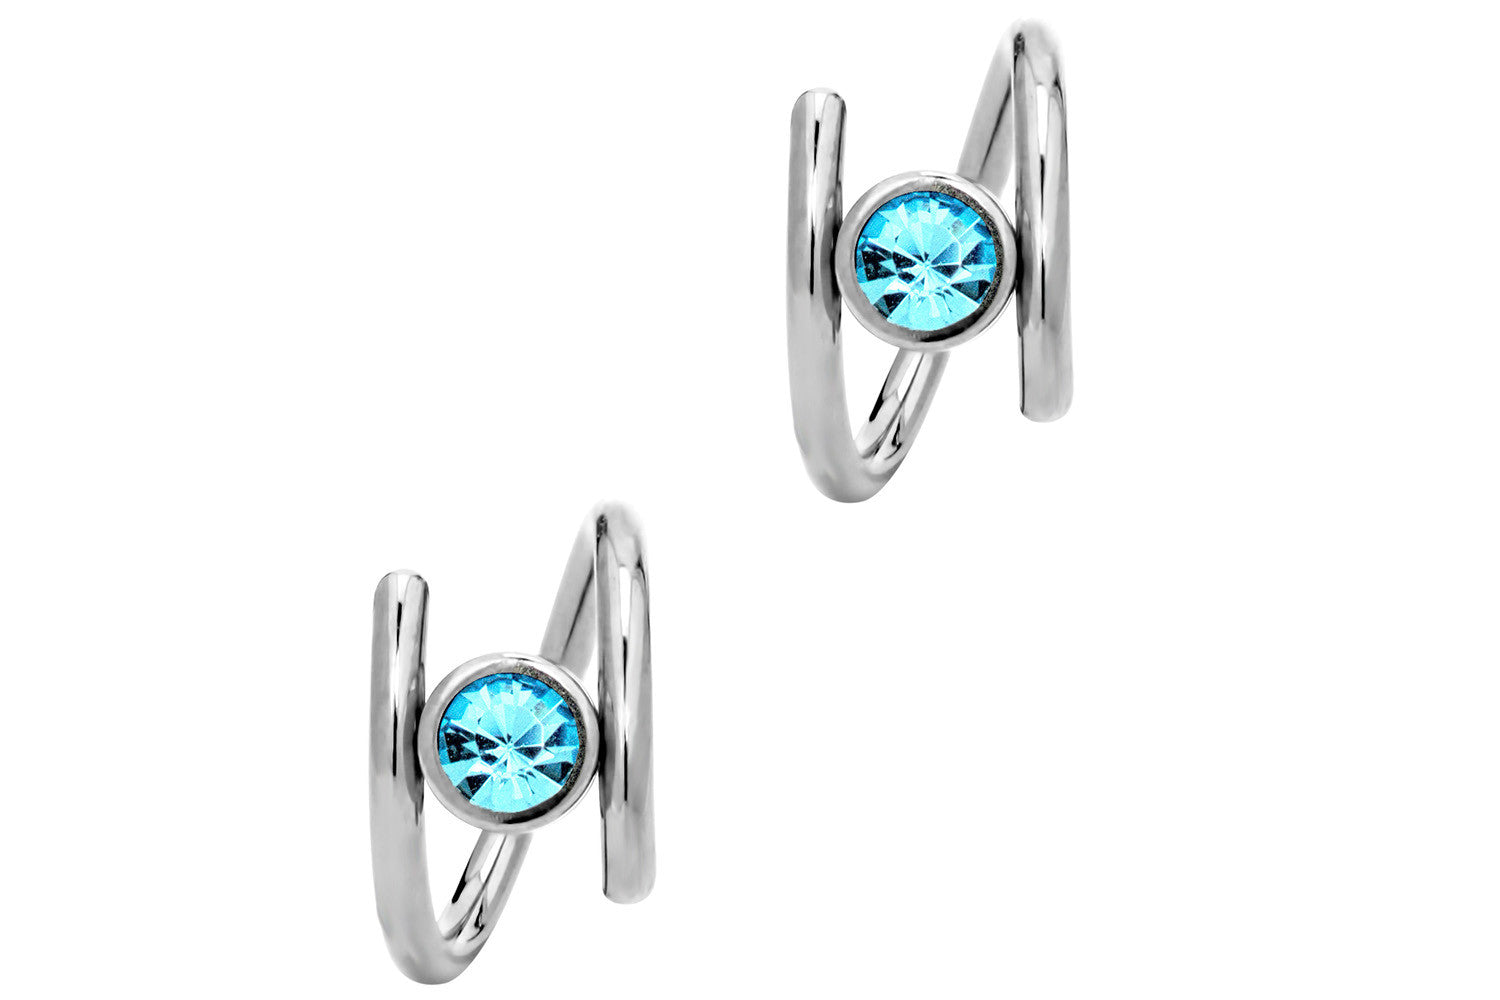 Pair of Aqua Twist Hoop Earrings